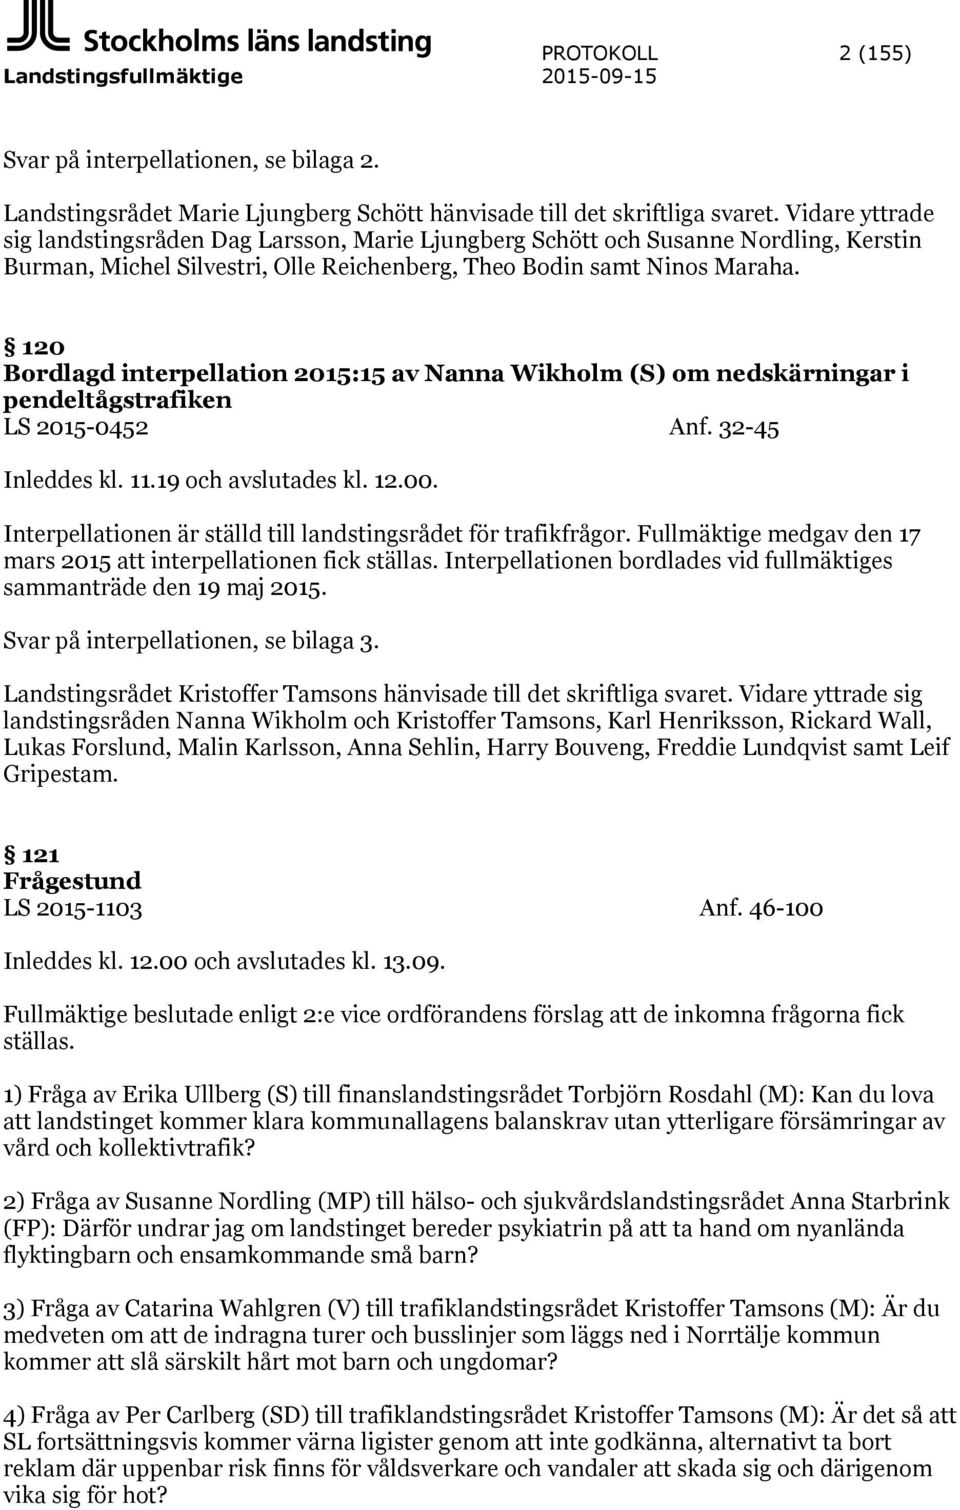 120 Bordlagd interpellation 2015:15 av Nanna Wikholm (S) om nedskärningar i pendeltågstrafiken LS 2015-0452 Anf. 32-45 Inleddes kl. 11.19 och avslutades kl. 12.00.